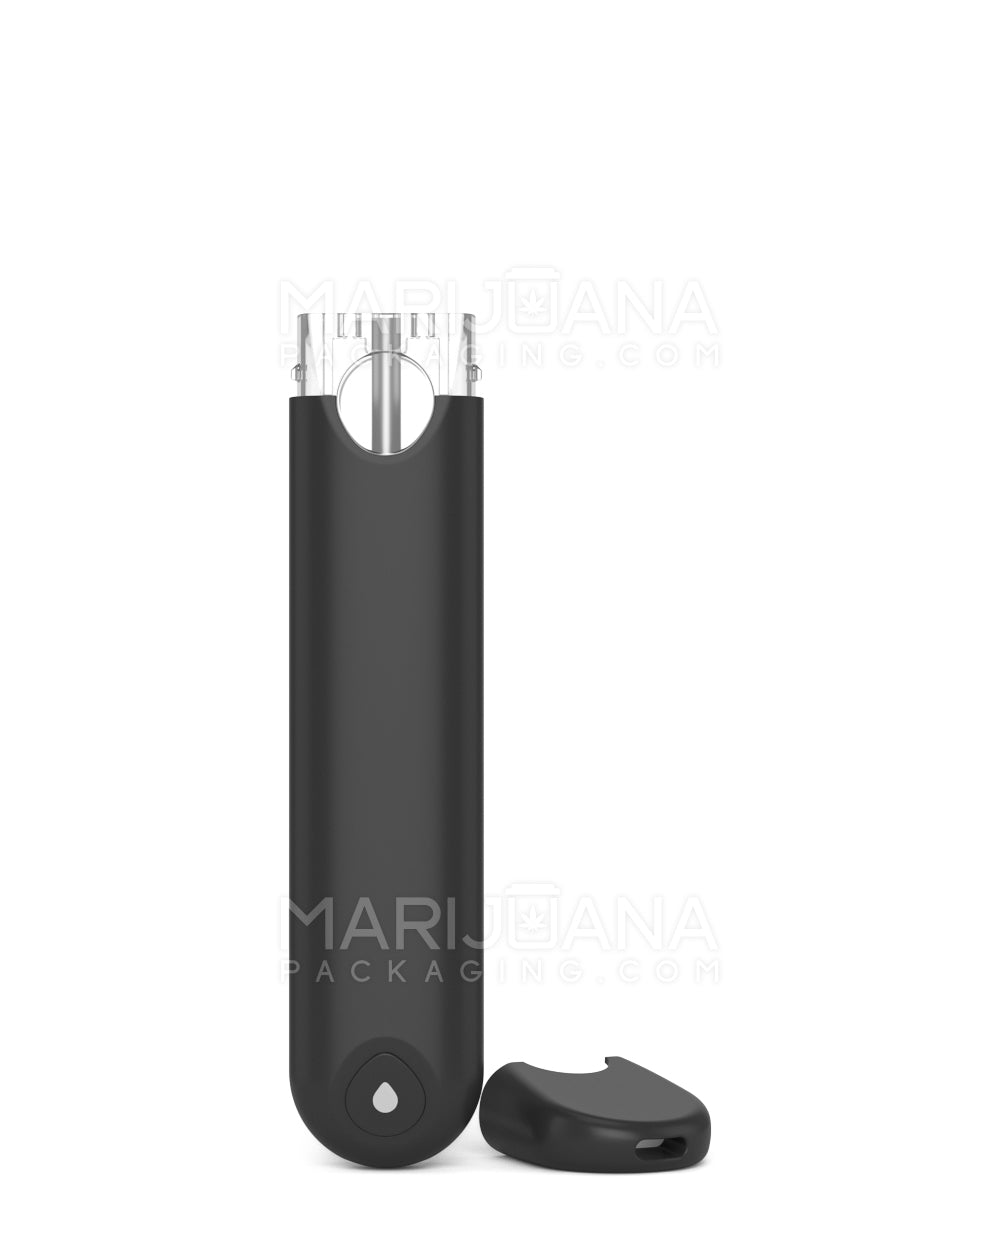 1ml Rechargeable Disposable Vape Pen – Black - RVTUS